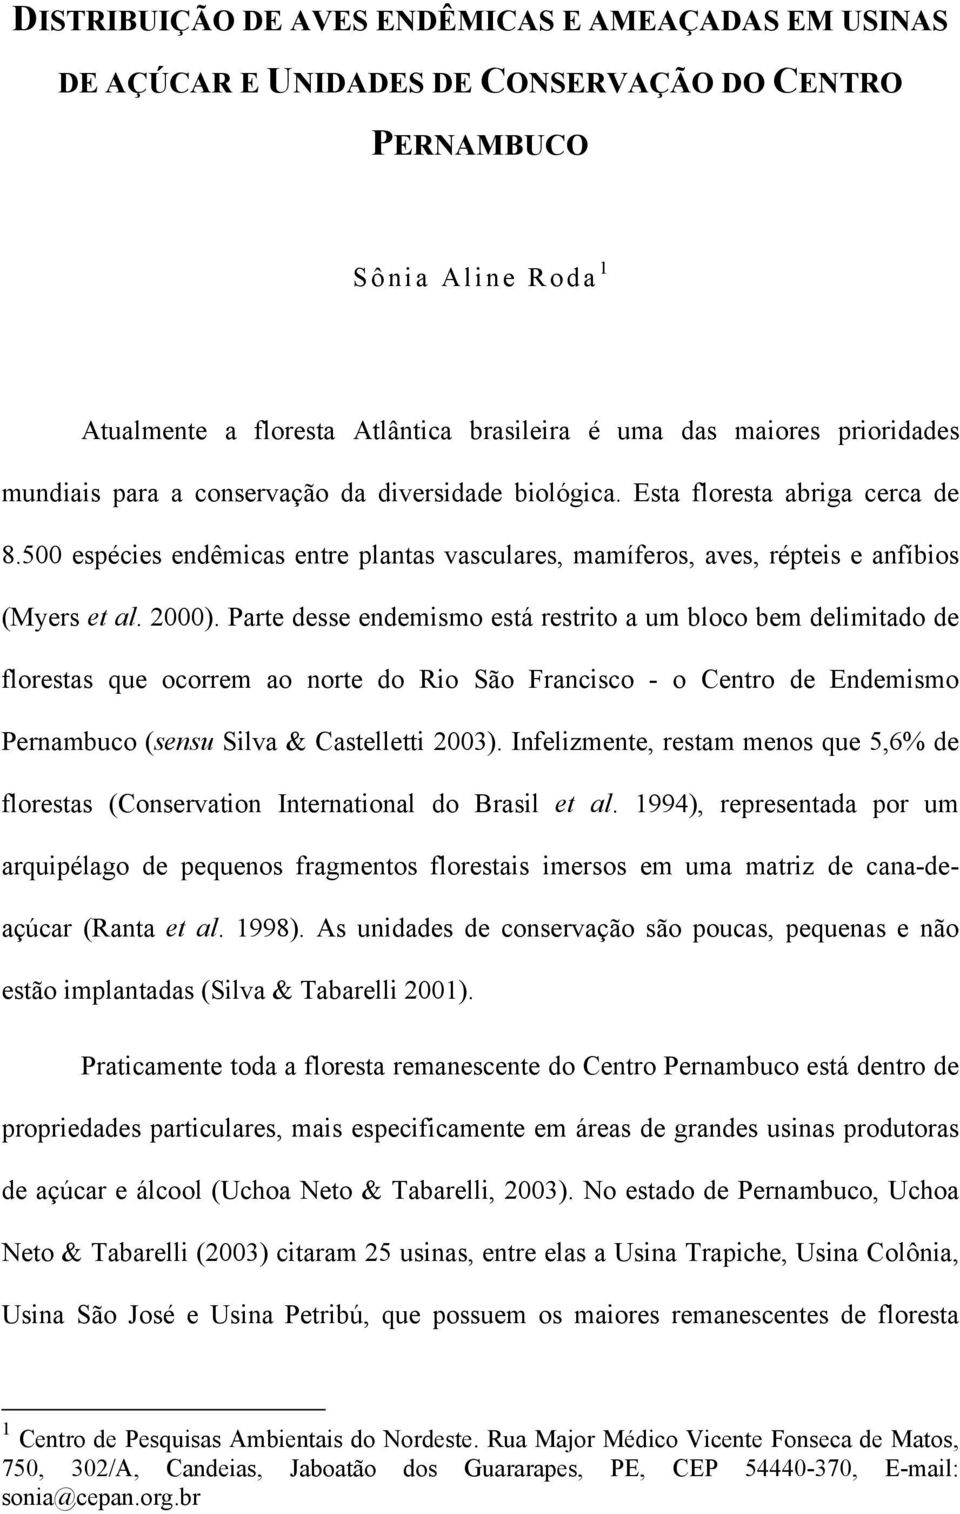 2000). Parte desse endemismo está restrito a um bloco bem delimitado de florestas que ocorrem ao norte do Rio São Francisco - o Centro de Pernambuco (sensu Silva & Castelletti 2003).